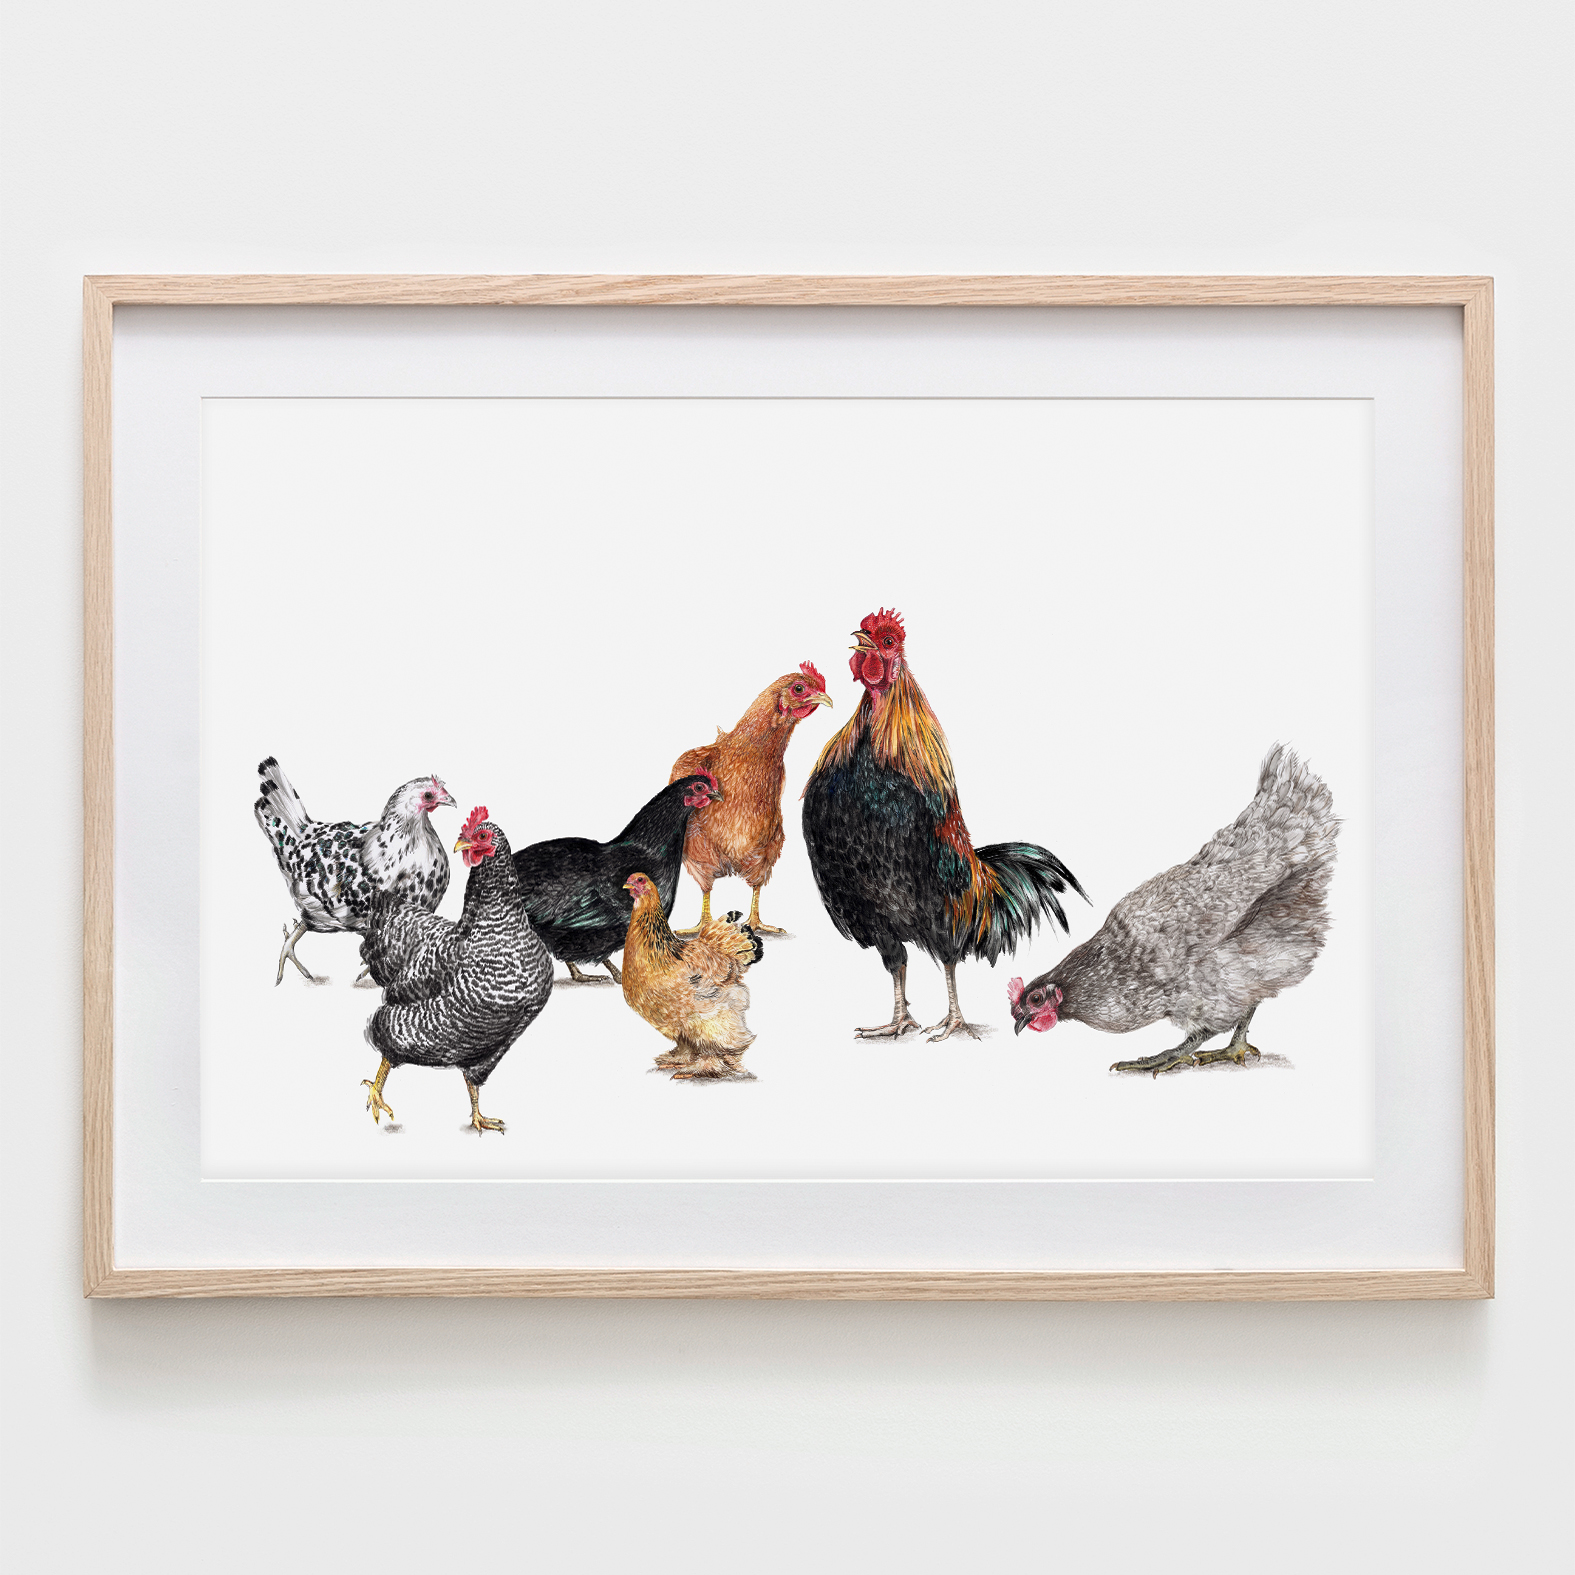 7 Hühner, Fine Art Print, Giclée Print, Poster, Kunstdruck, Zeichnung